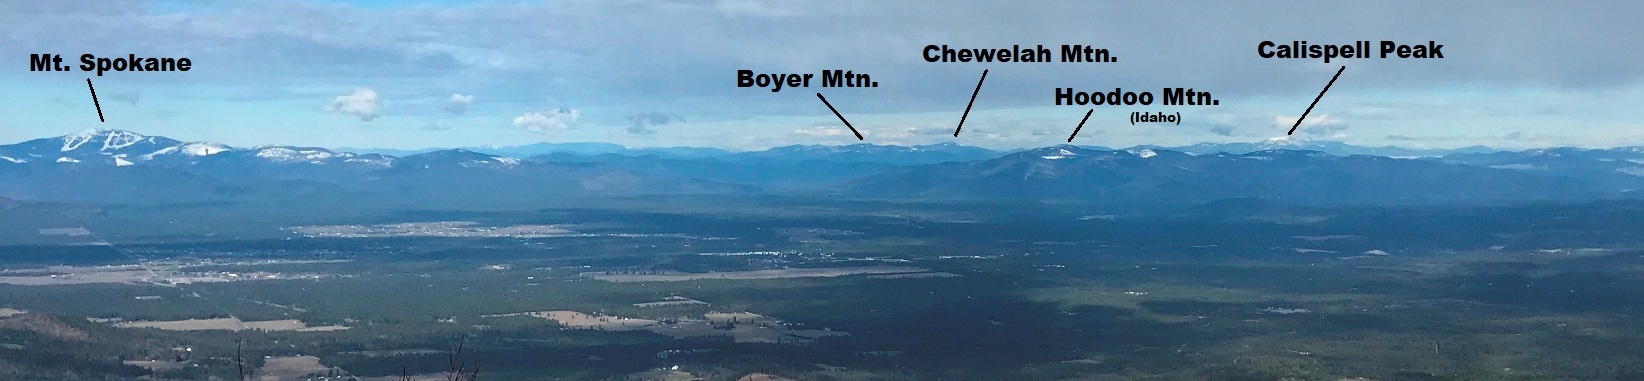 chilco mountain view